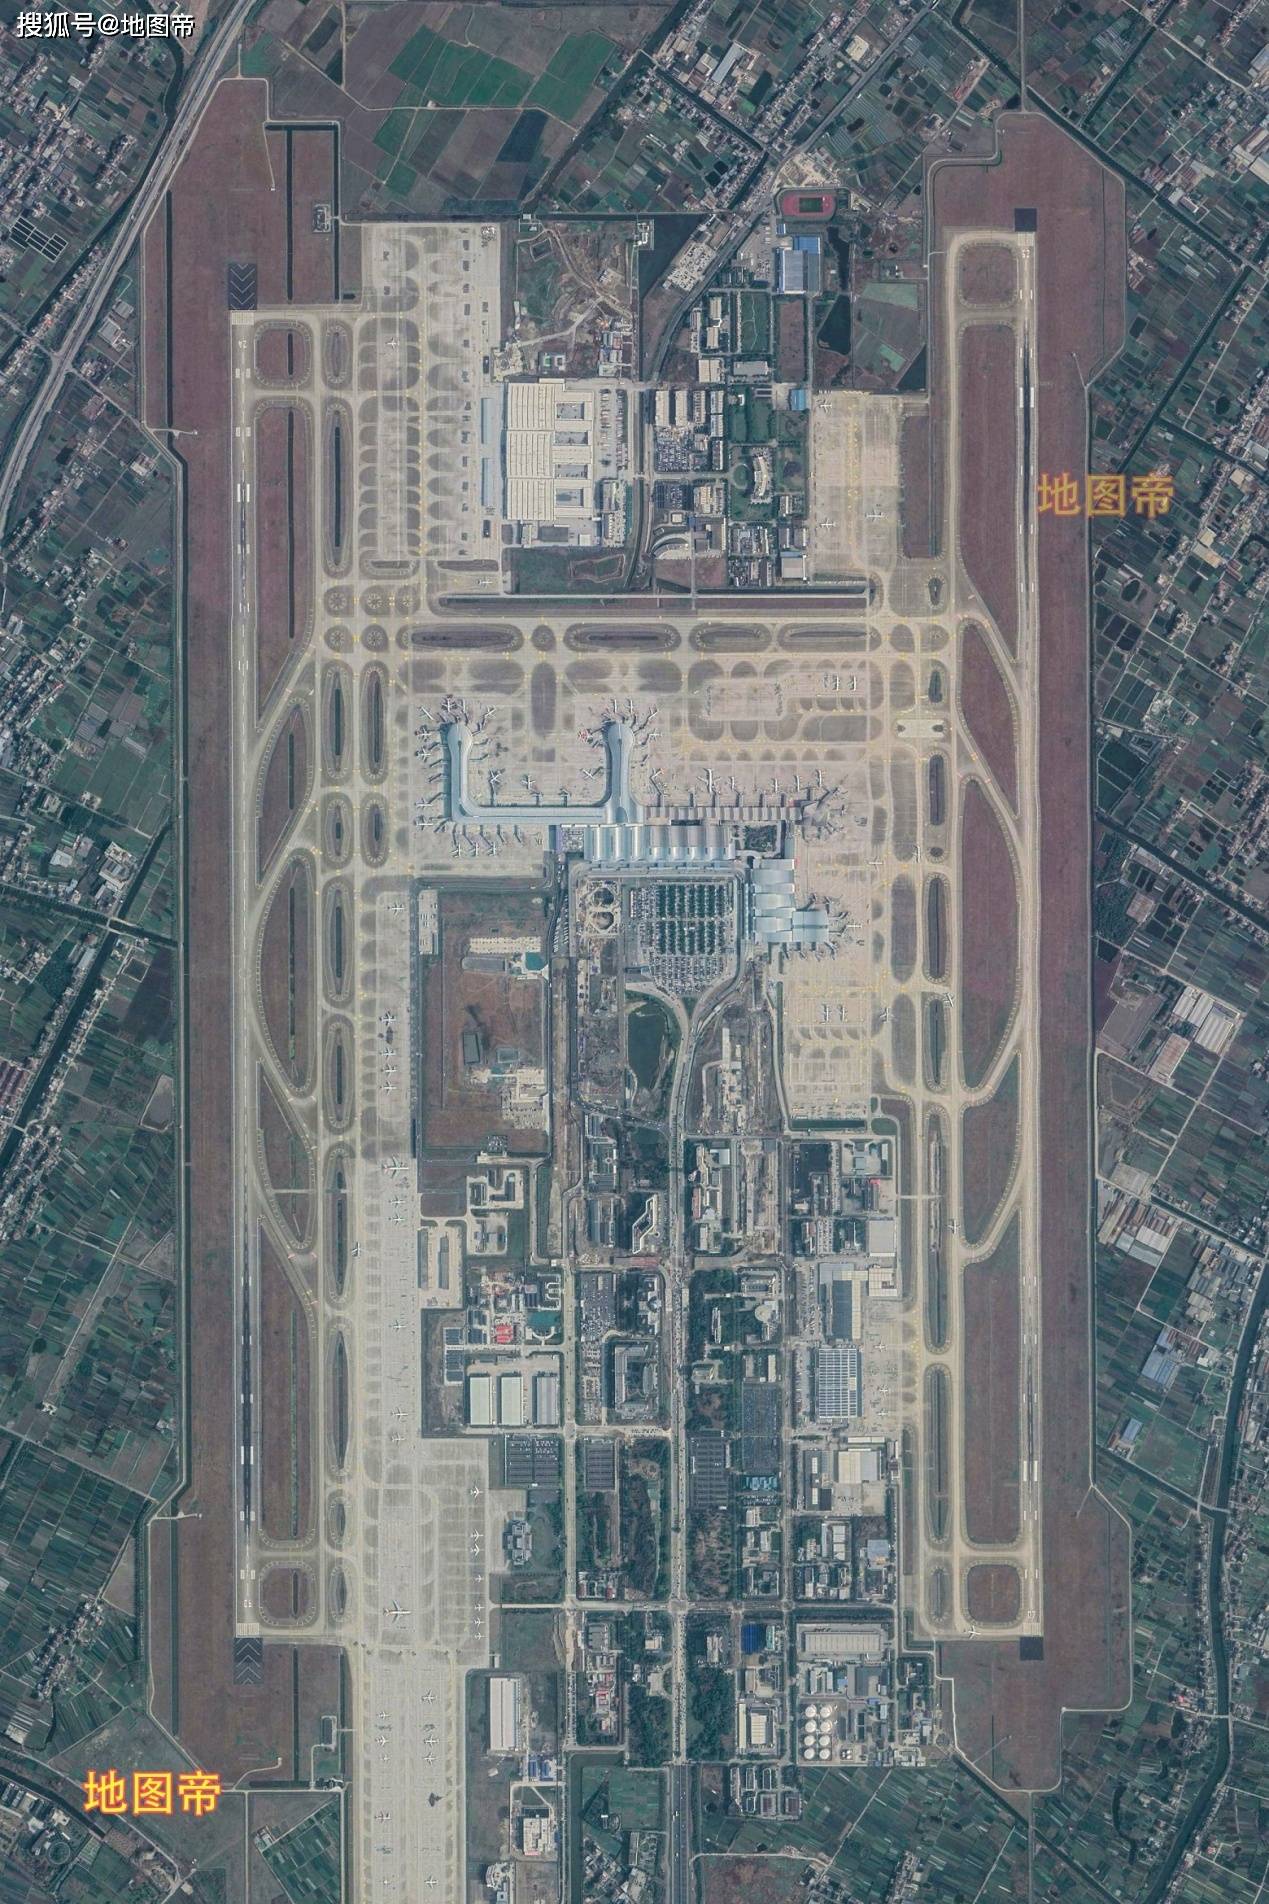 原创南京禄口机场和杭州萧山机场,谁是华东第三?